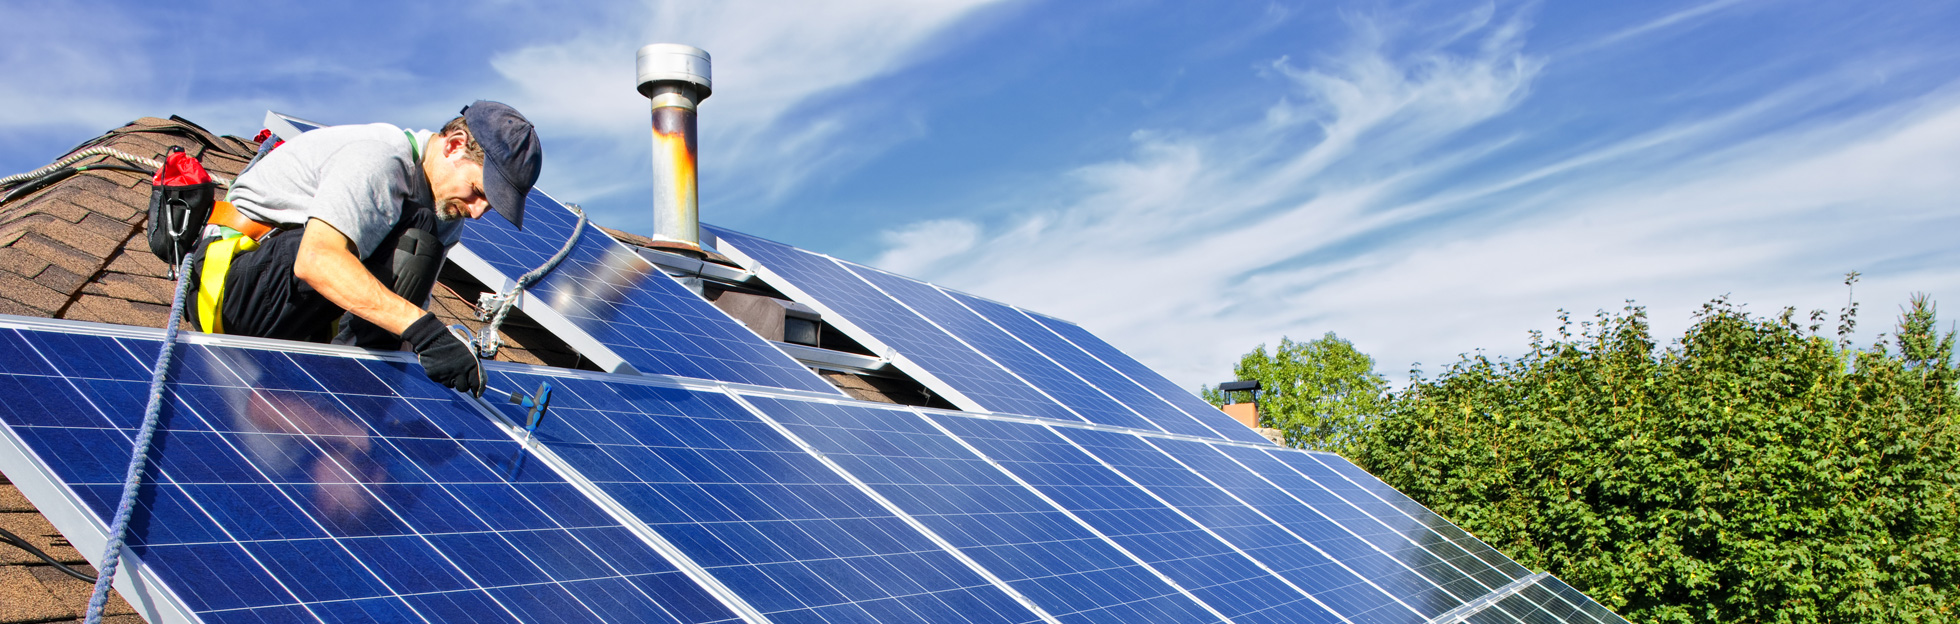 Energies renouvelables : installation de panneaux photovoltaïques